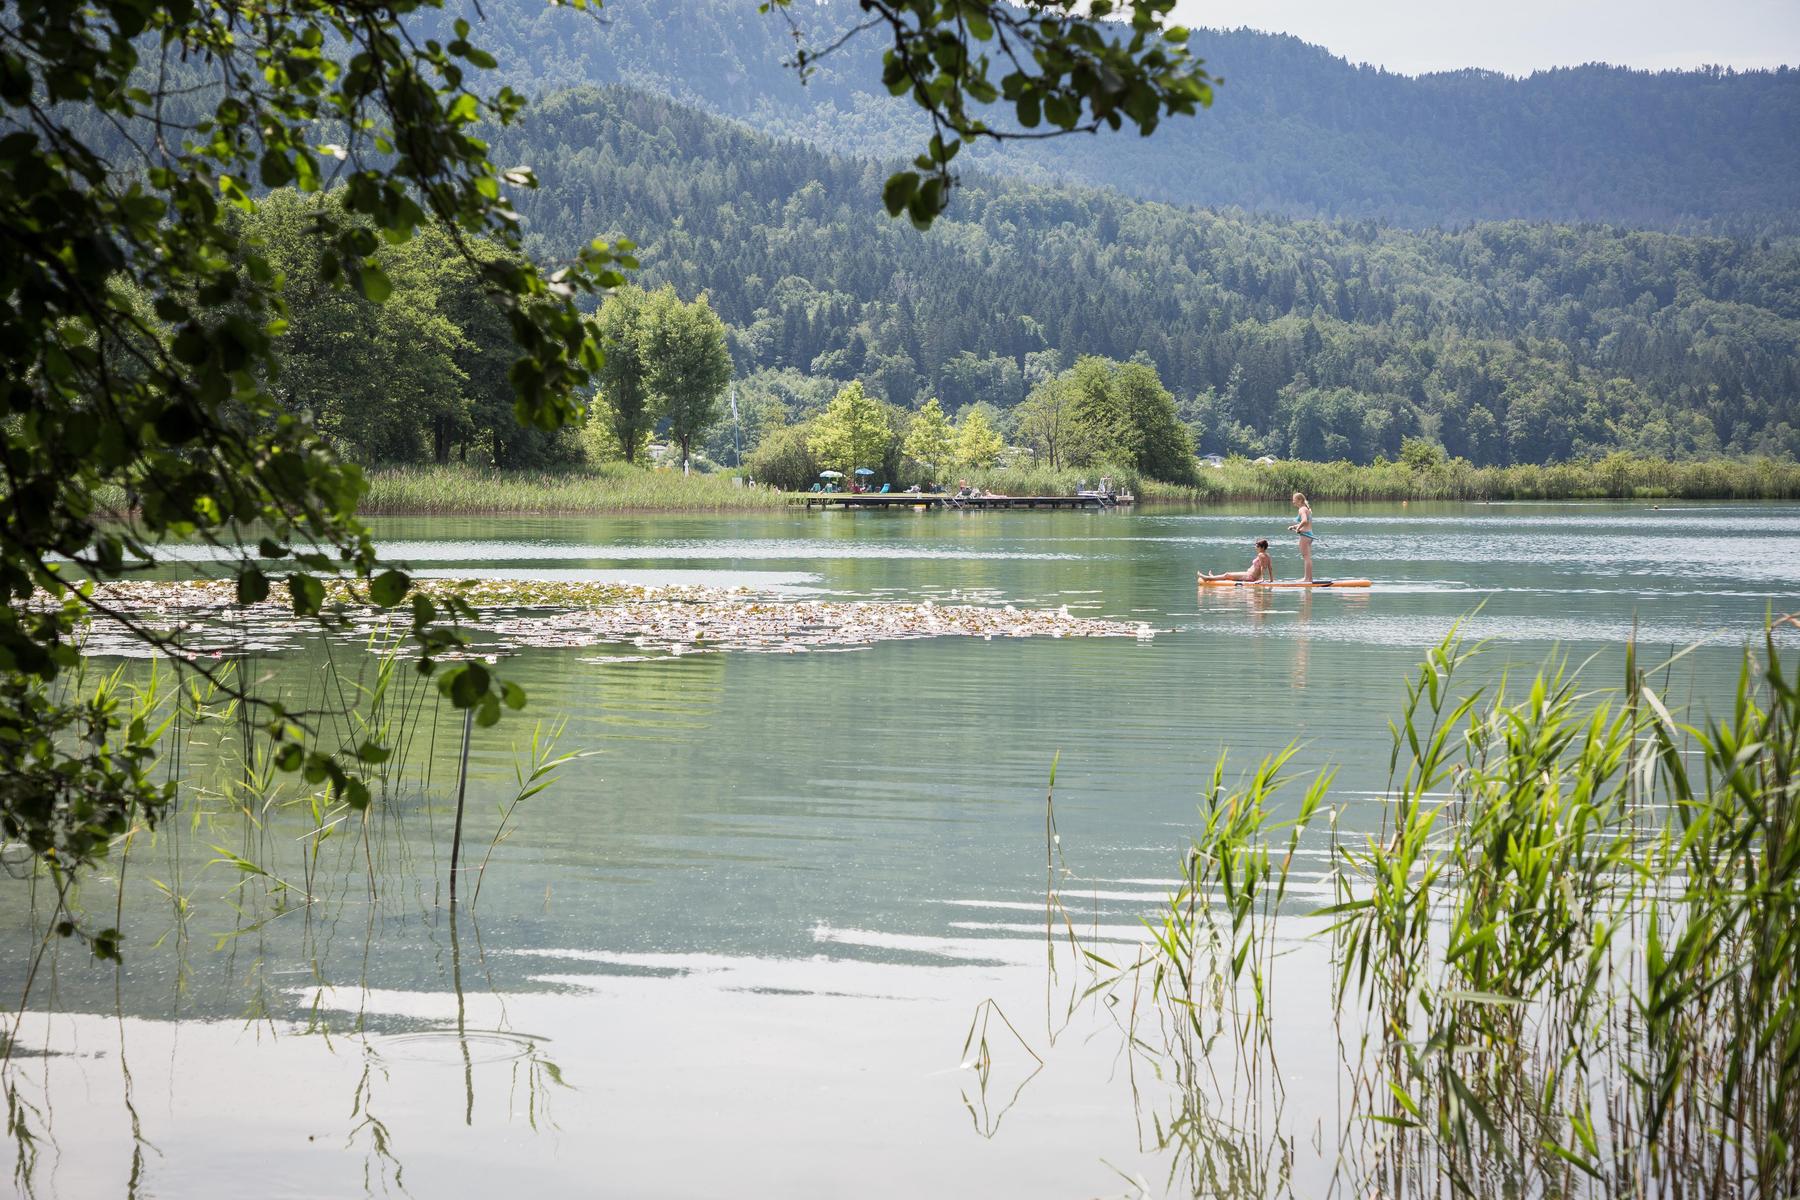 Angst und Erleichterung: Suche nach Bub (13) in Kärntner See - der hatte sich verschwommen